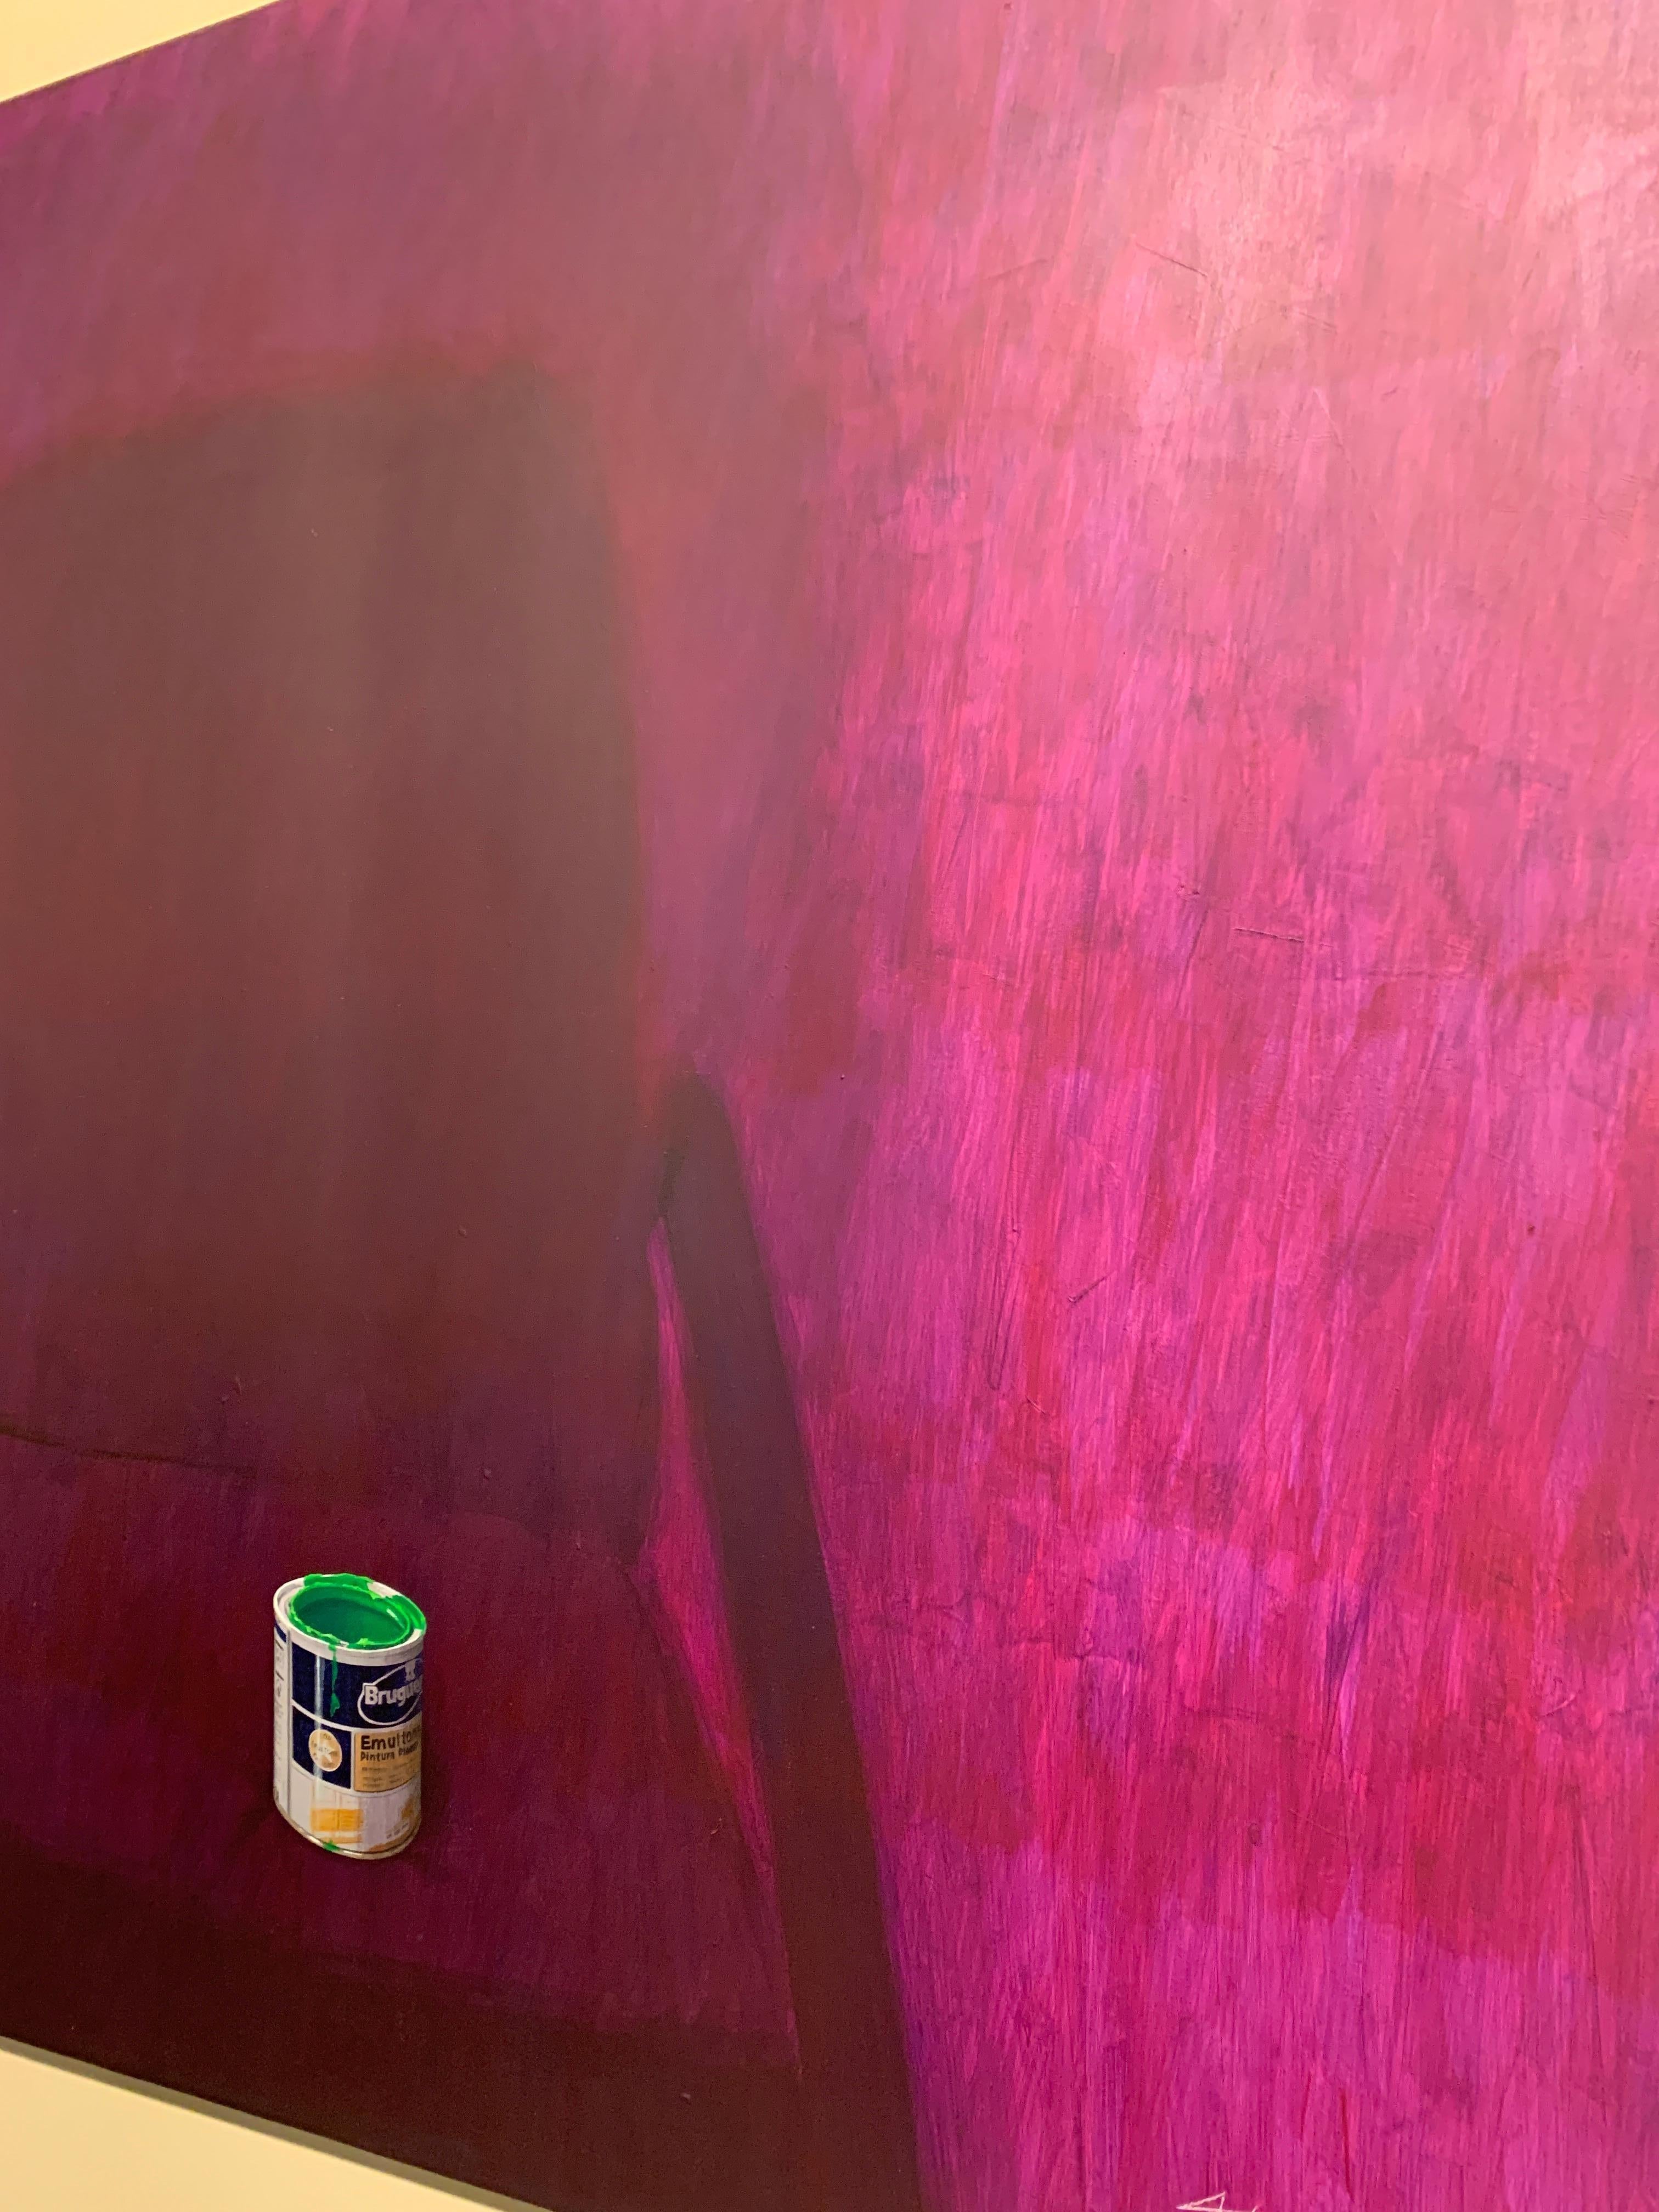 Pintura Morada (Purple Paint) - Painting by Antoni Dura